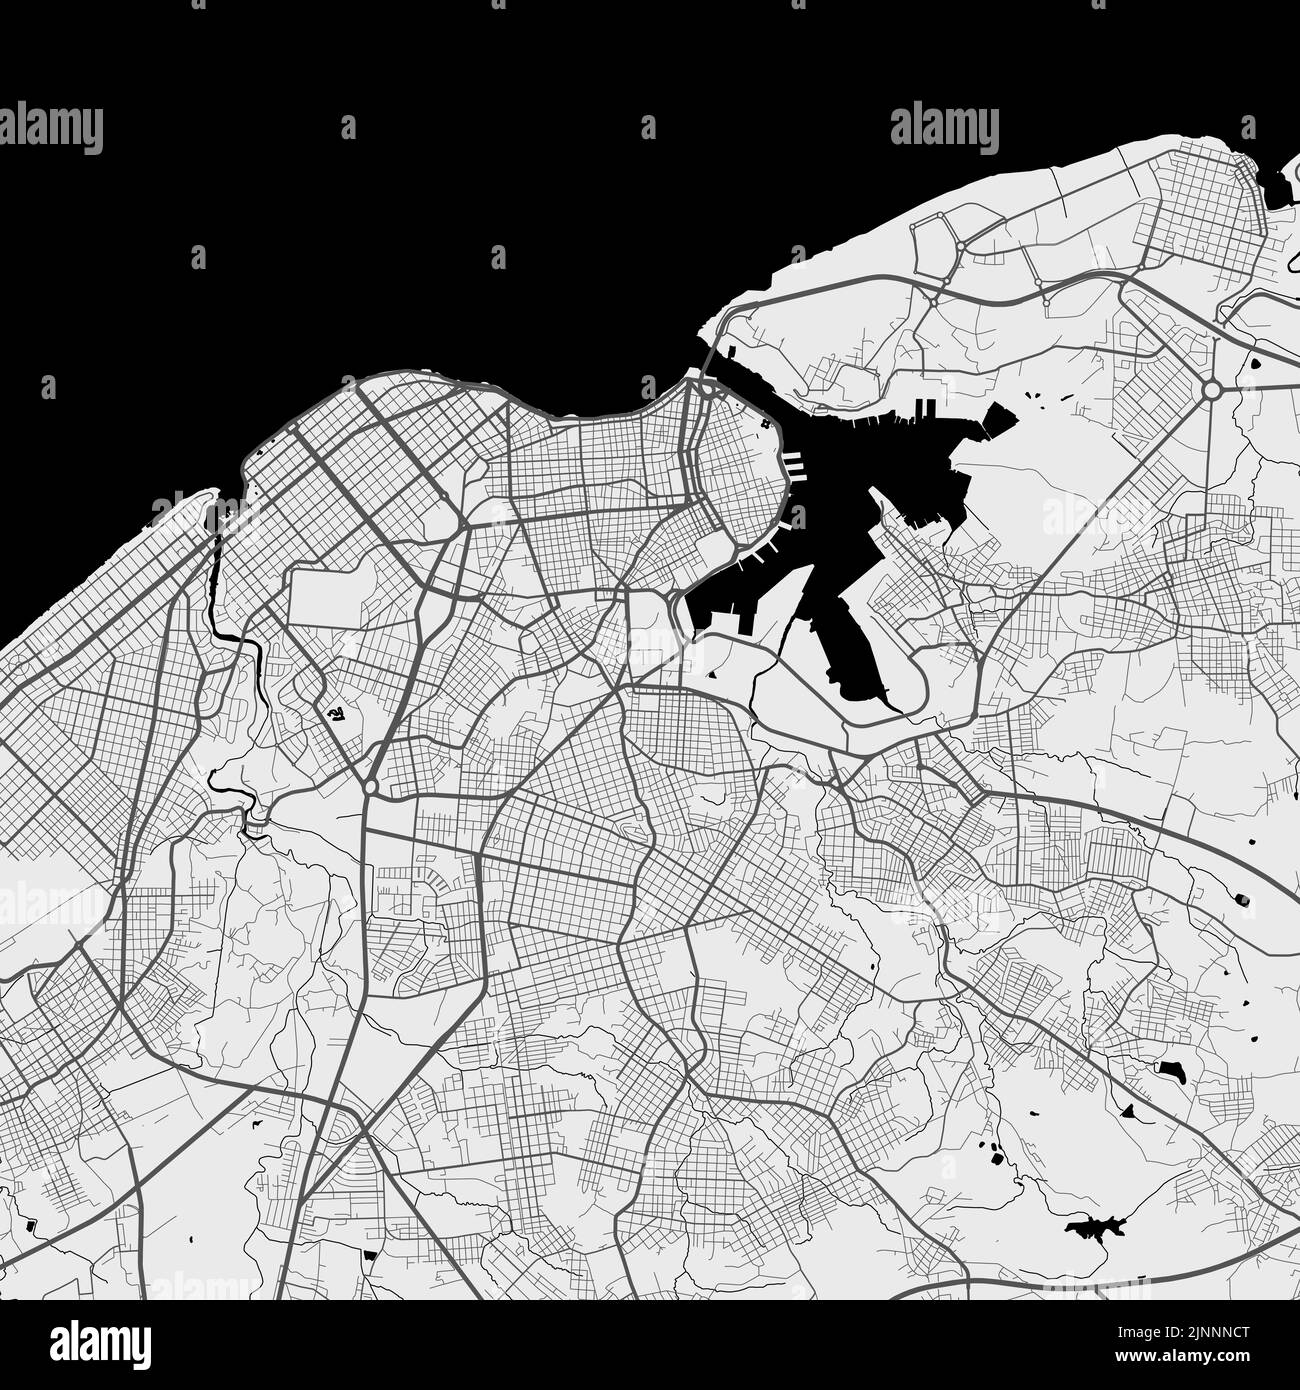 Carte vectorielle de la ville de la Havane. Affiche en niveaux de gris urbains. Carte routière avec vue de la région métropolitaine. Illustration de Vecteur